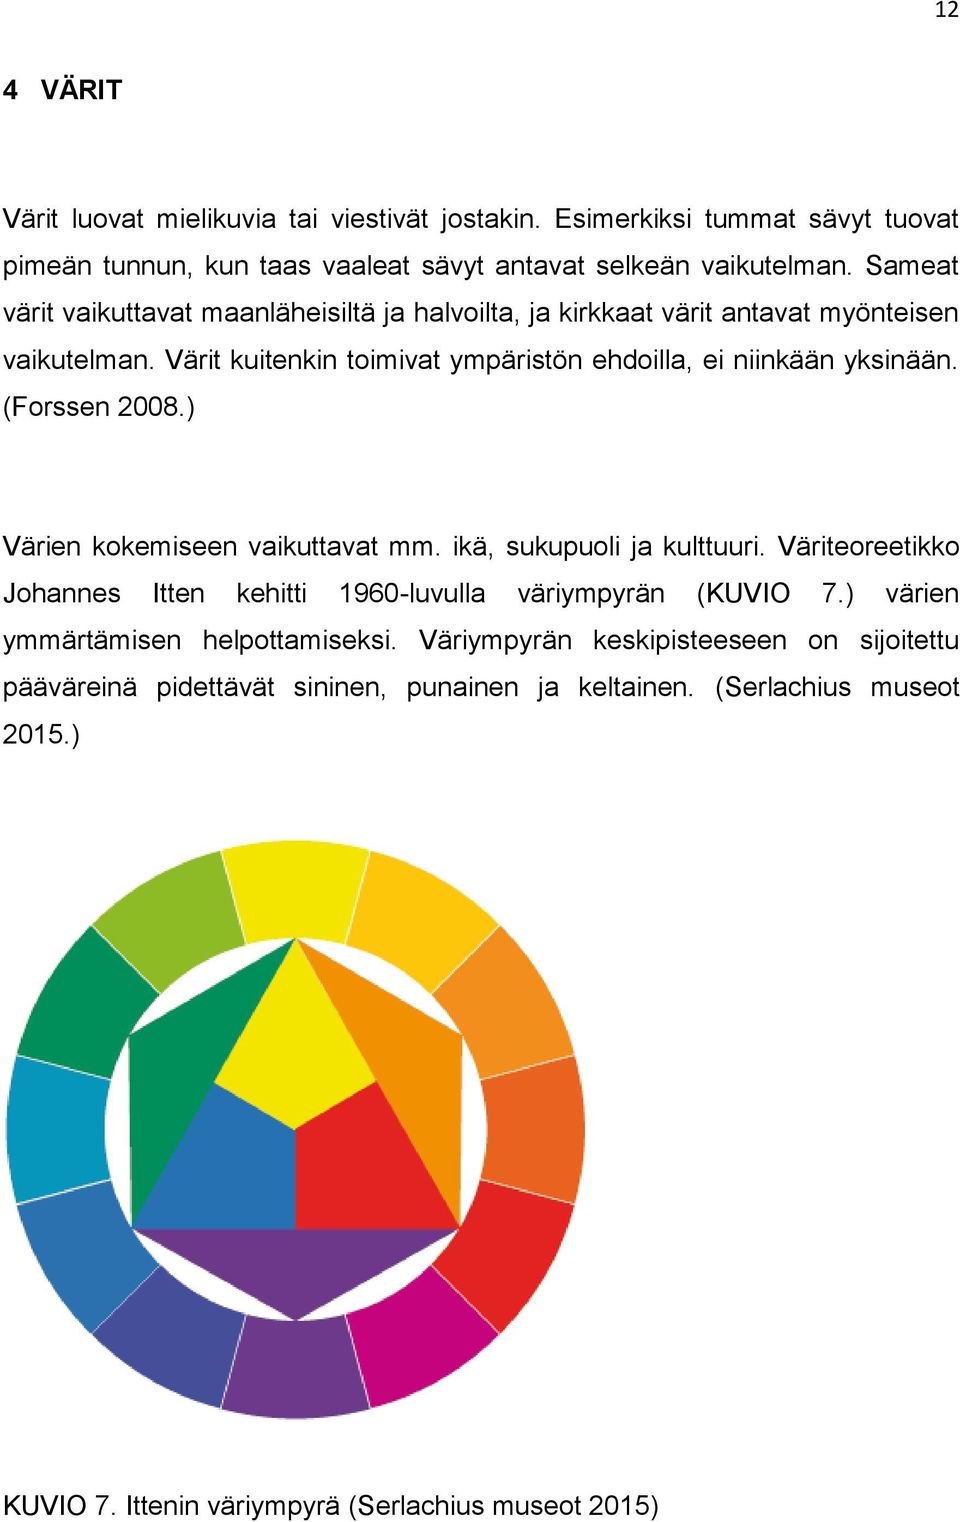 (Forssen 2008.) Värien kokemiseen vaikuttavat mm. ikä, sukupuoli ja kulttuuri. Väriteoreetikko Johannes Itten kehitti 1960-luvulla väriympyrän (KUVIO 7.